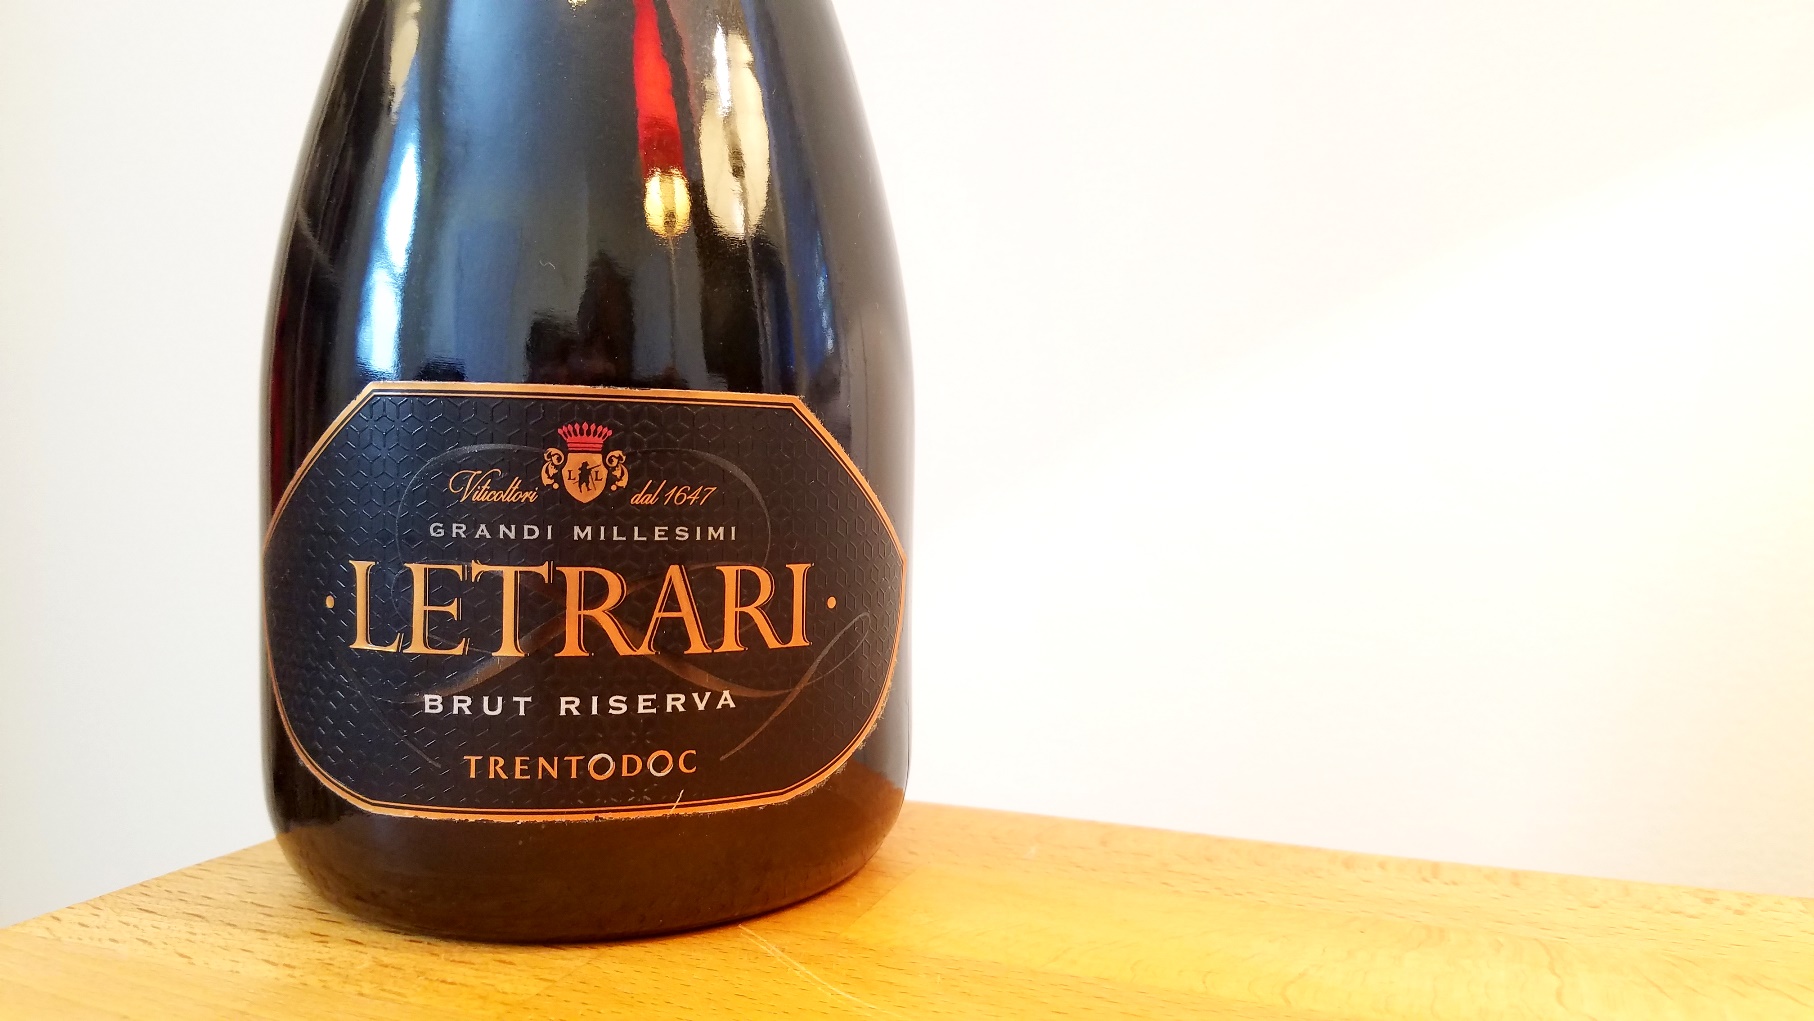 Letrari, Talento Brut Riserva 2014, Trento DOC, Italy, Wine Casual